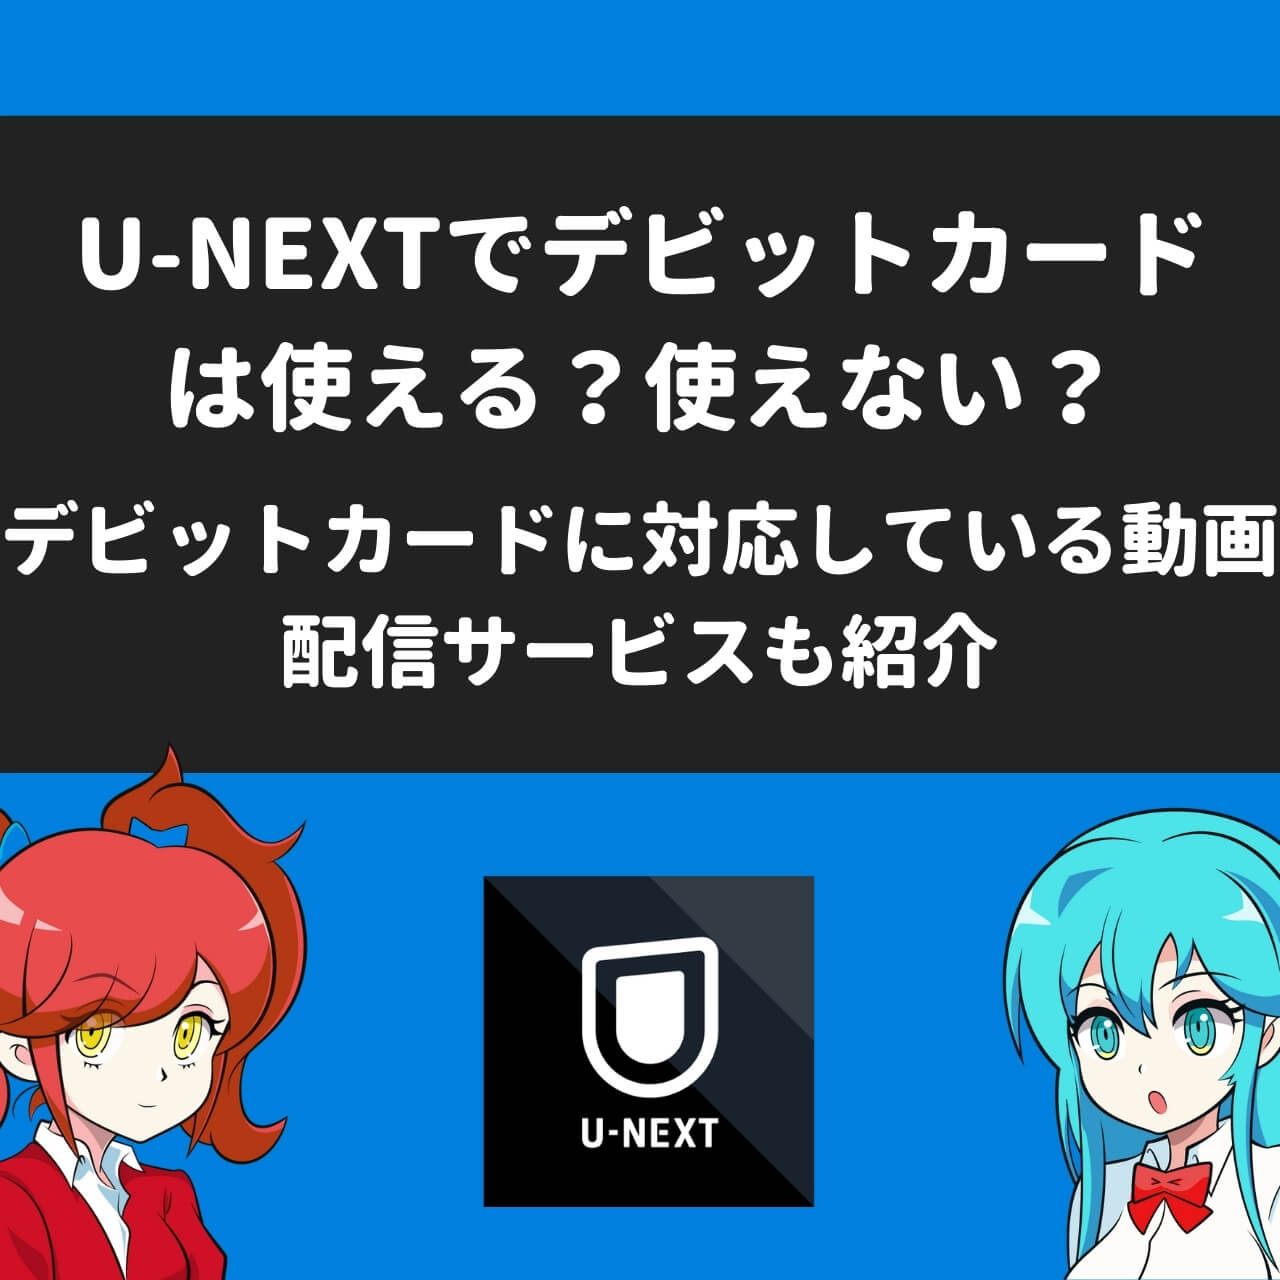 U Nextでデビットカードは使える 使えない デビットカードに対応している動画配信サービスも紹介 アニメガホン